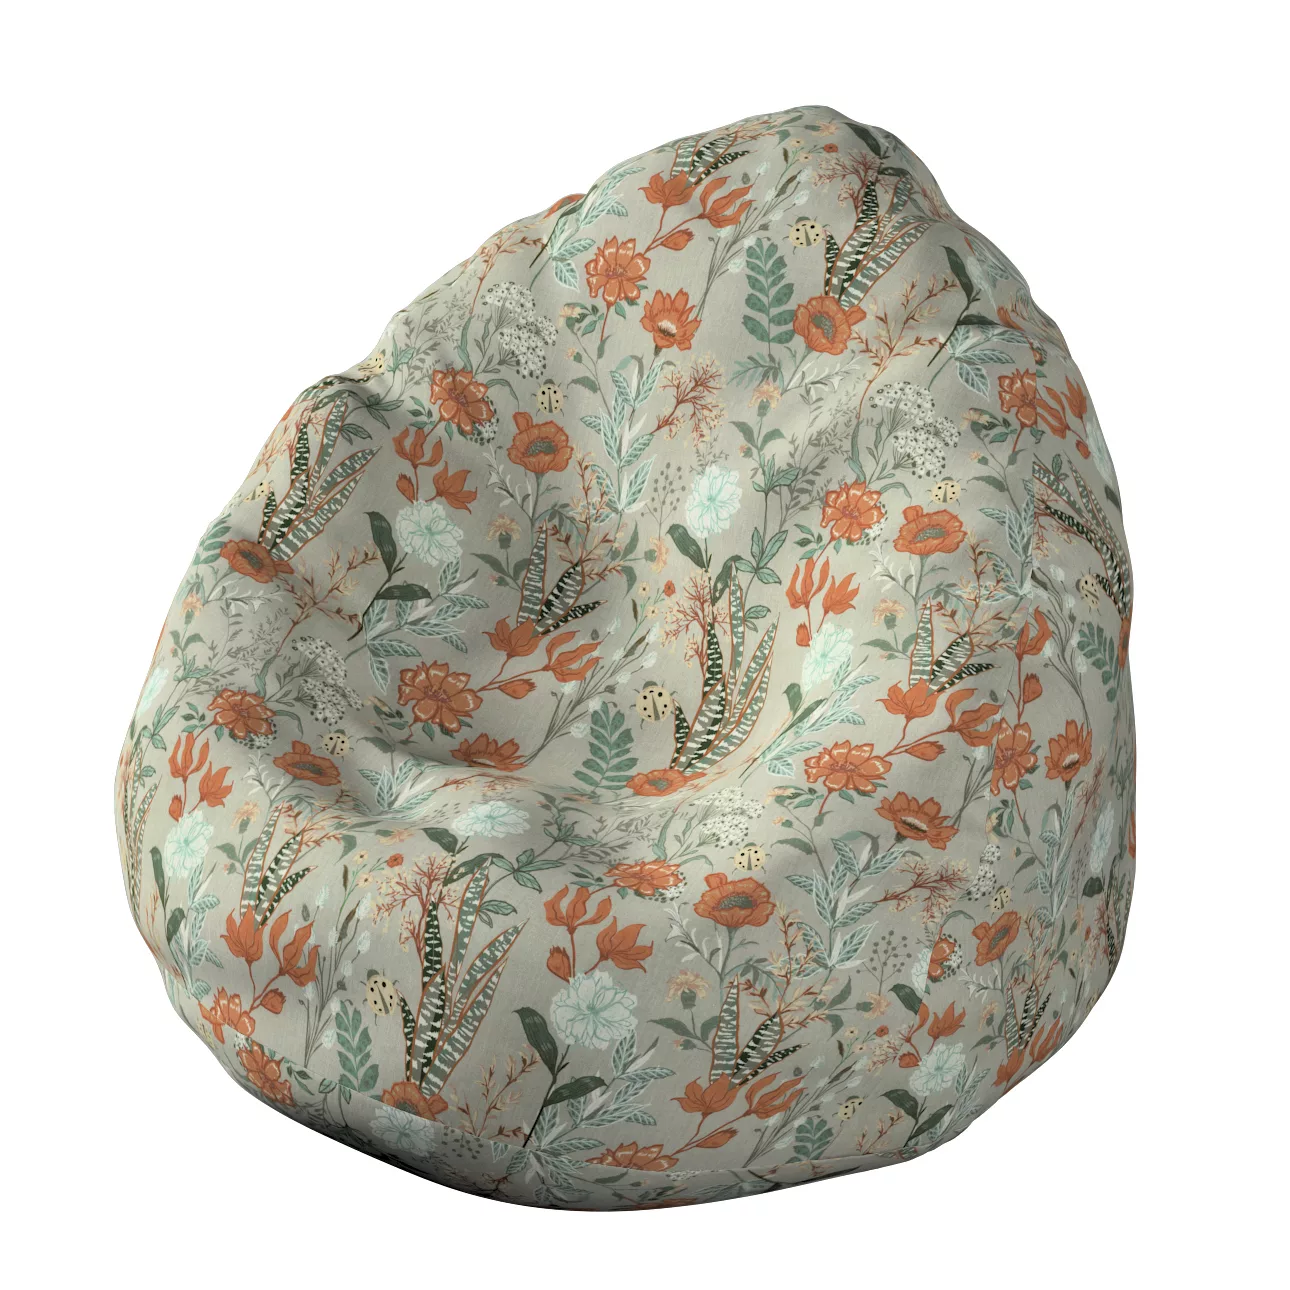 Bezug für Sitzsack, grau-orange-grün, Bezug für Sitzsack Ø60 x 105 cm, Flow günstig online kaufen